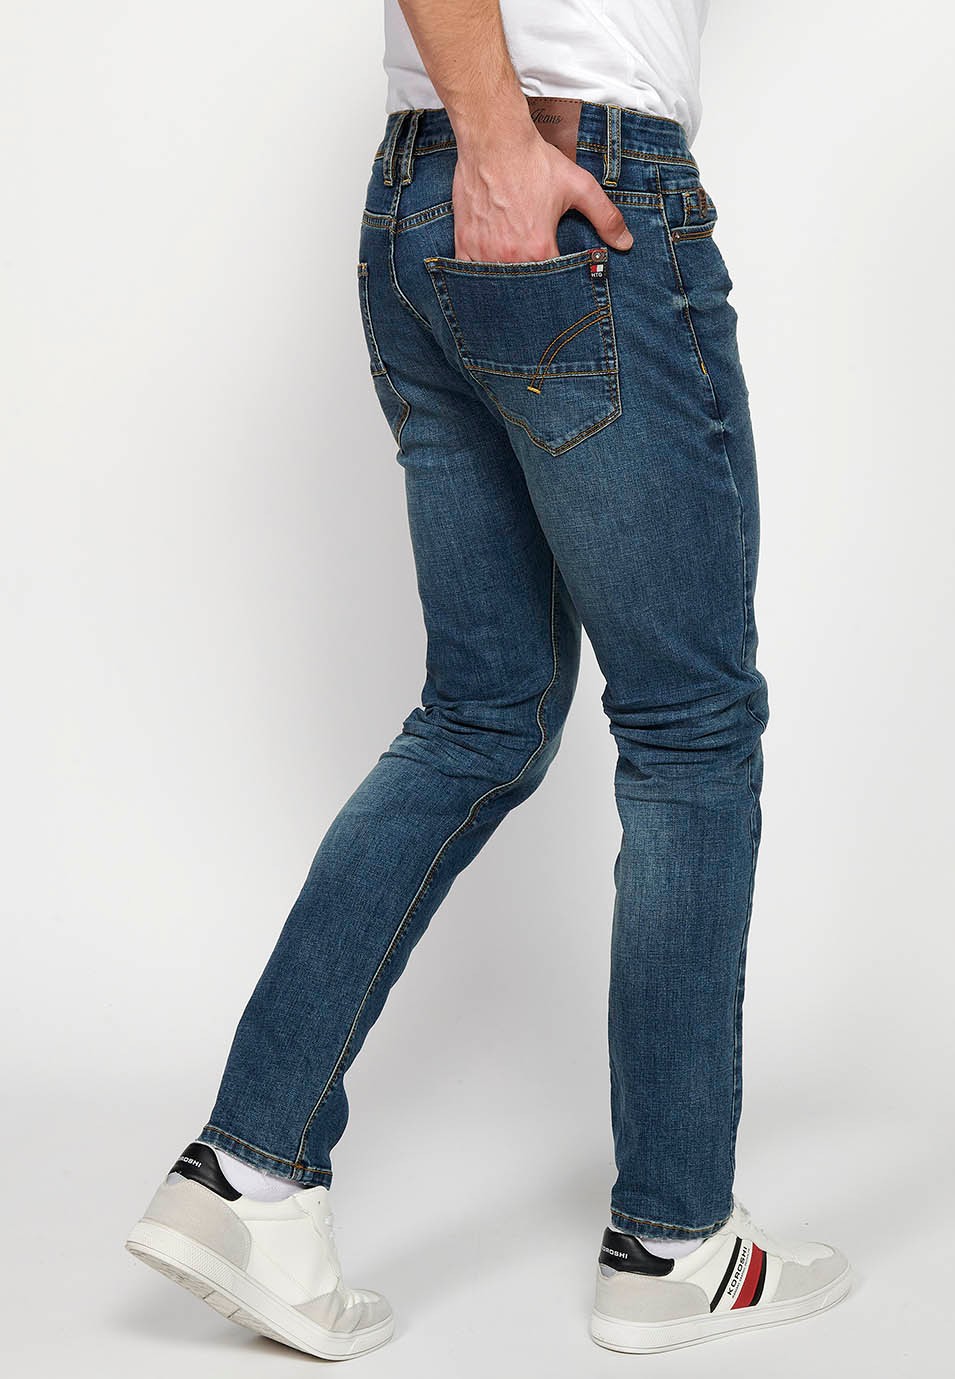 Pantalons llargs denim straigth regular fit amb Tancament davanter amb cremallera i botó i Cinc butxaques, un ceriller de Color Blau per a Home 7